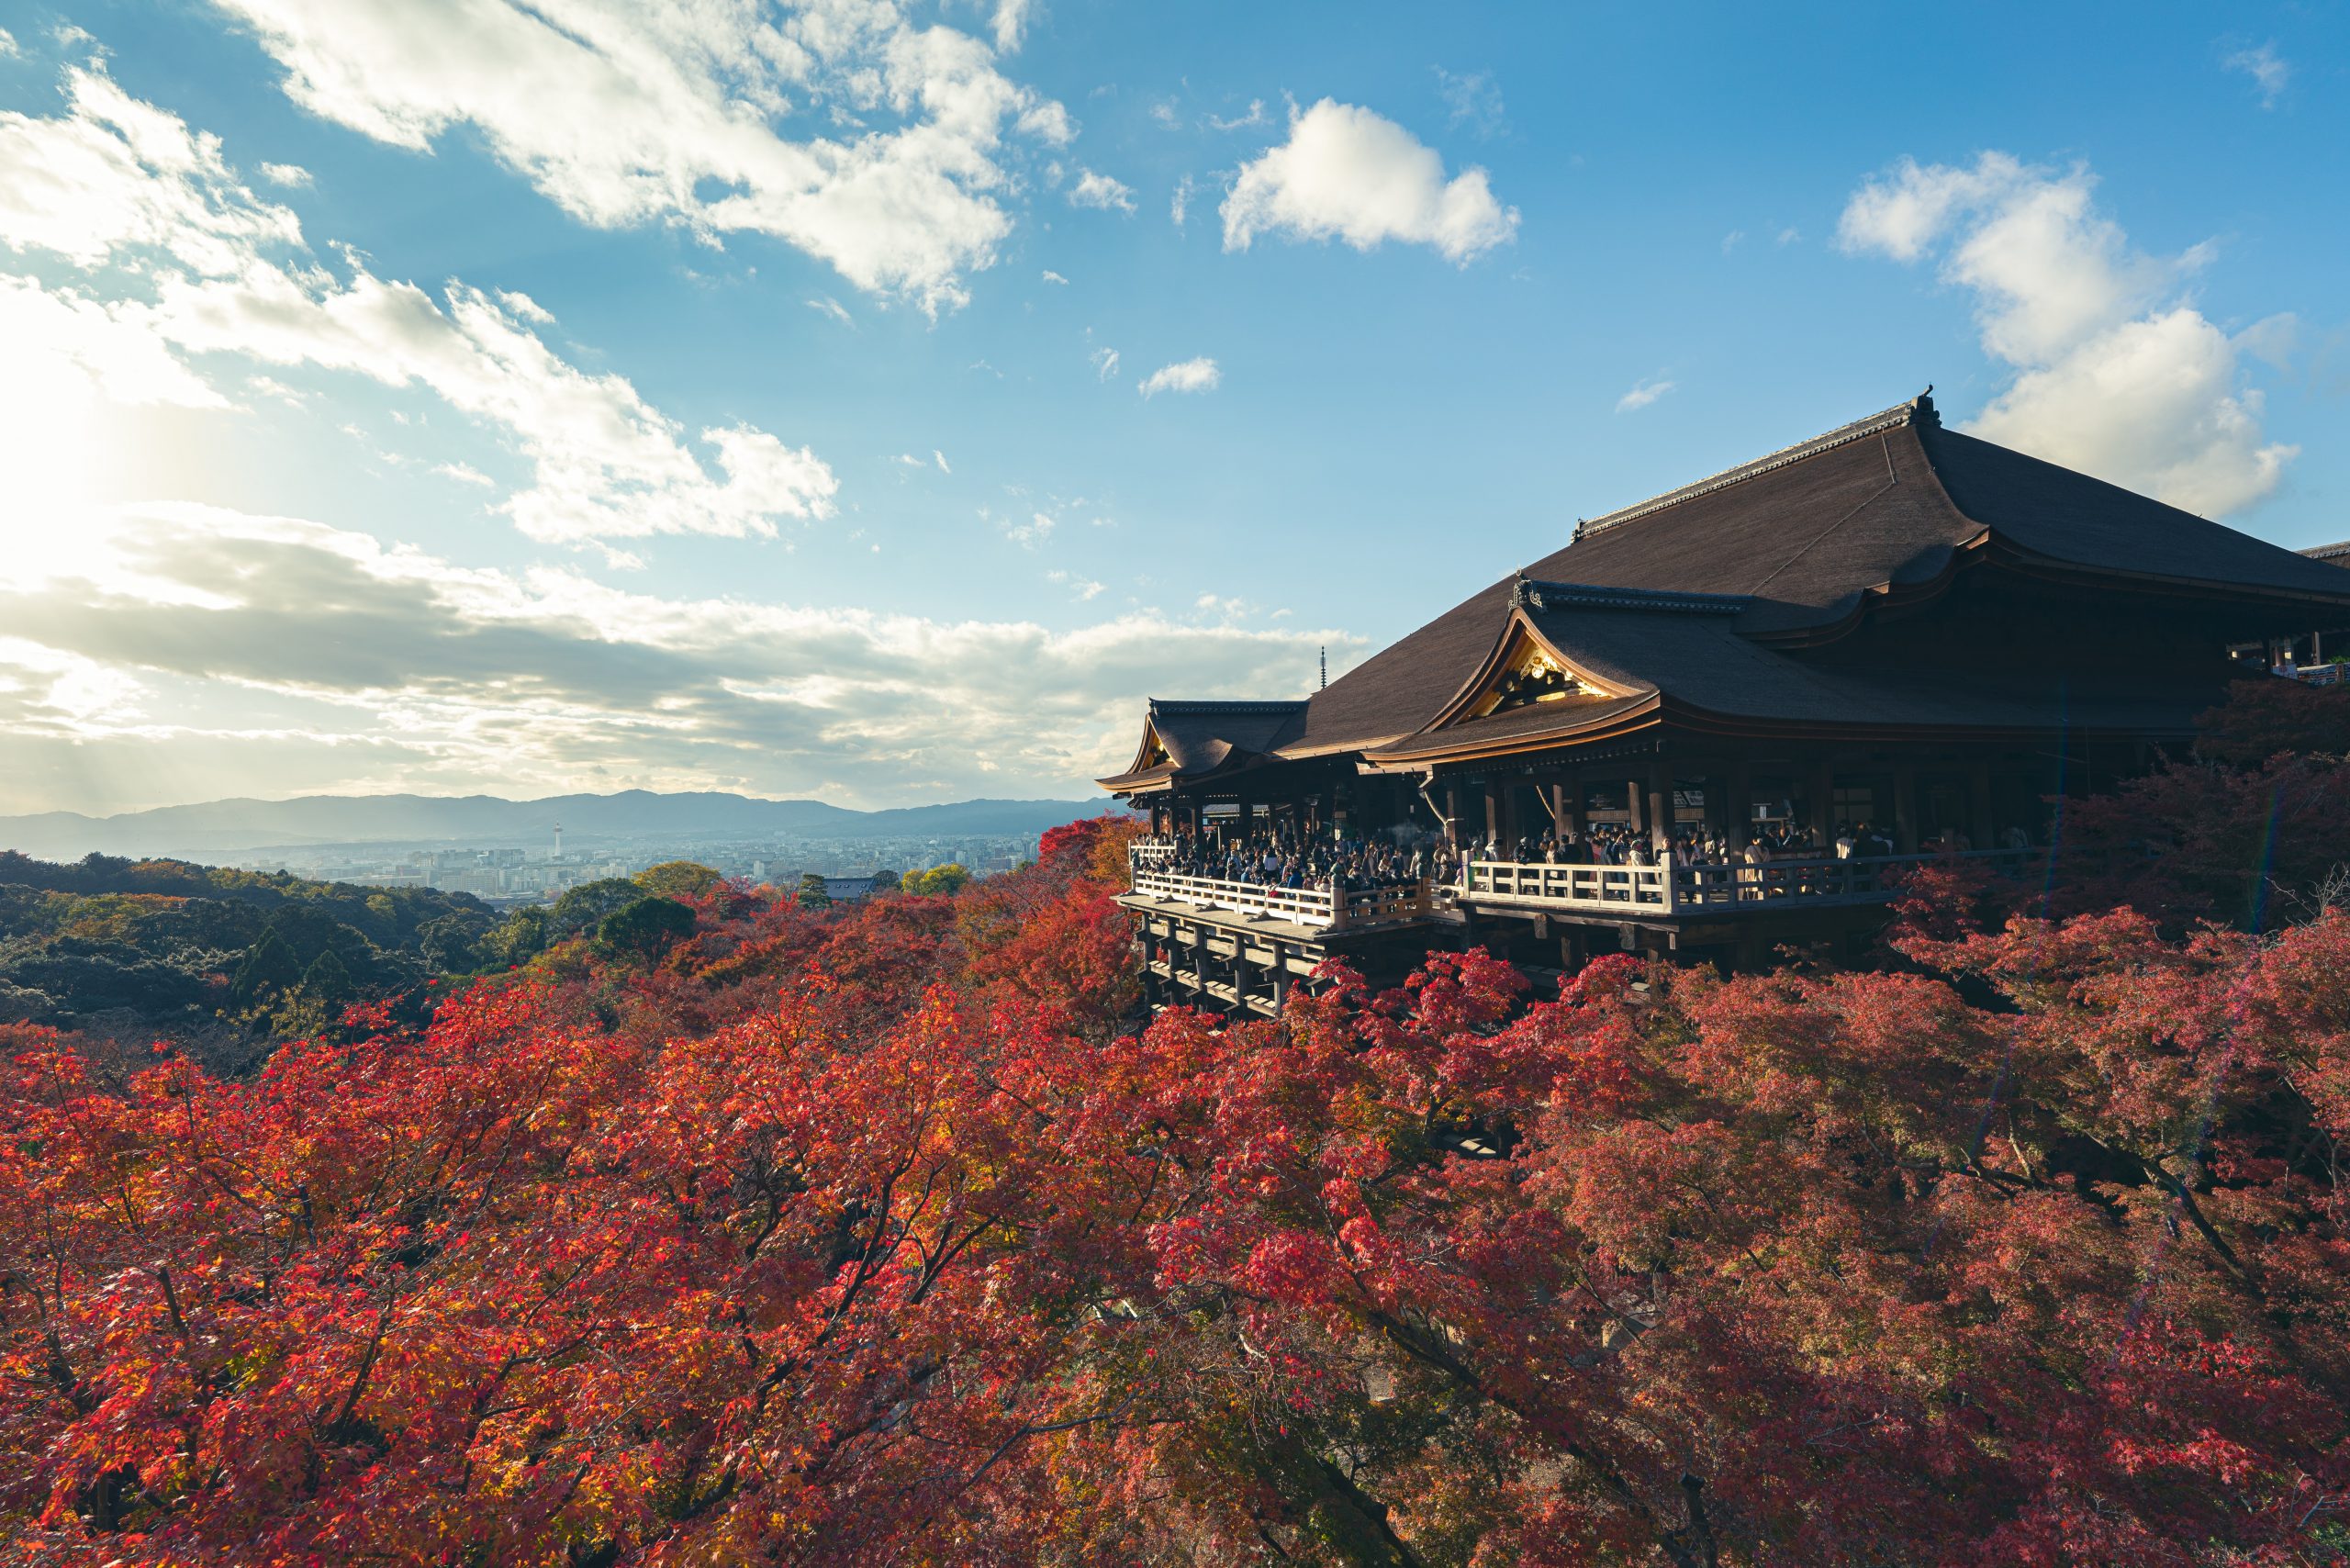 The stunning viewing platform at Kiyomizu-dera in Kyoto